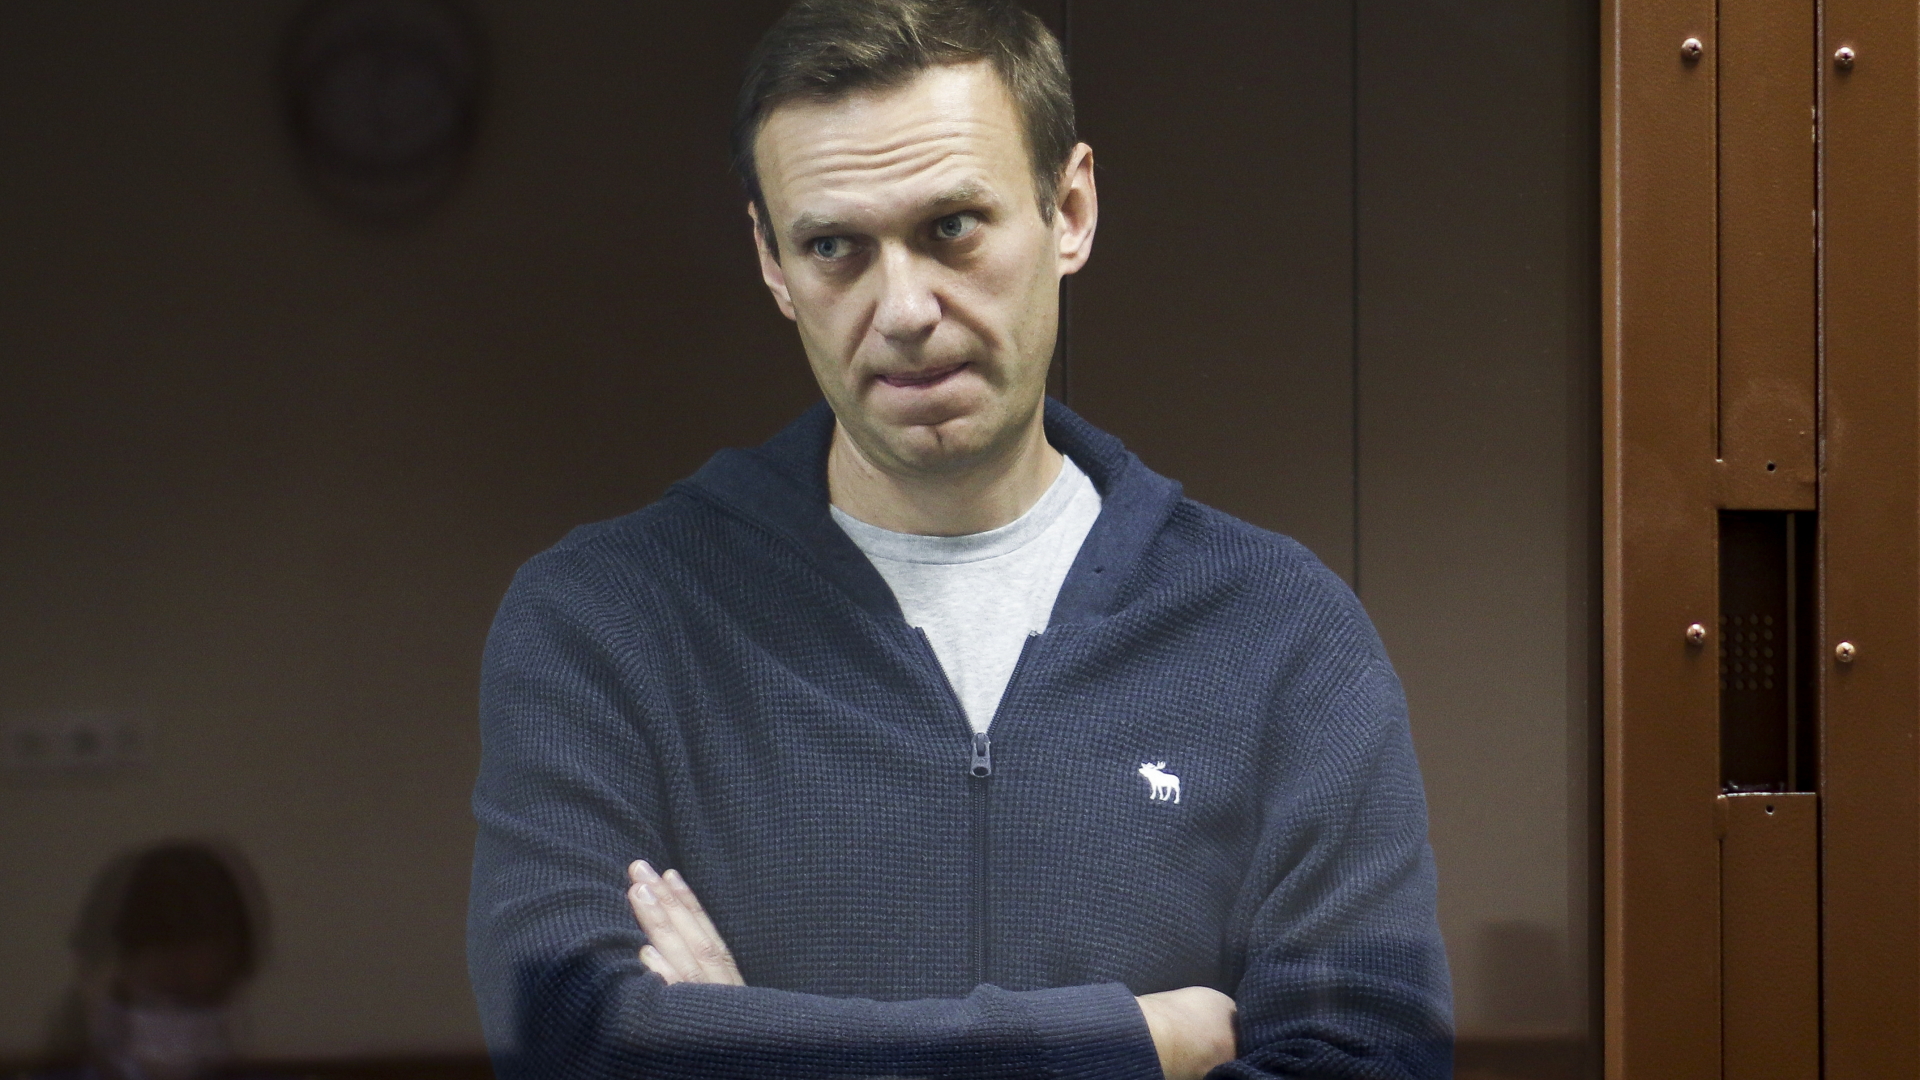 Der russische Oppositionspolitiker Alexej Nawalny vor Gericht (Archivbild)| Bildquelle: dpa